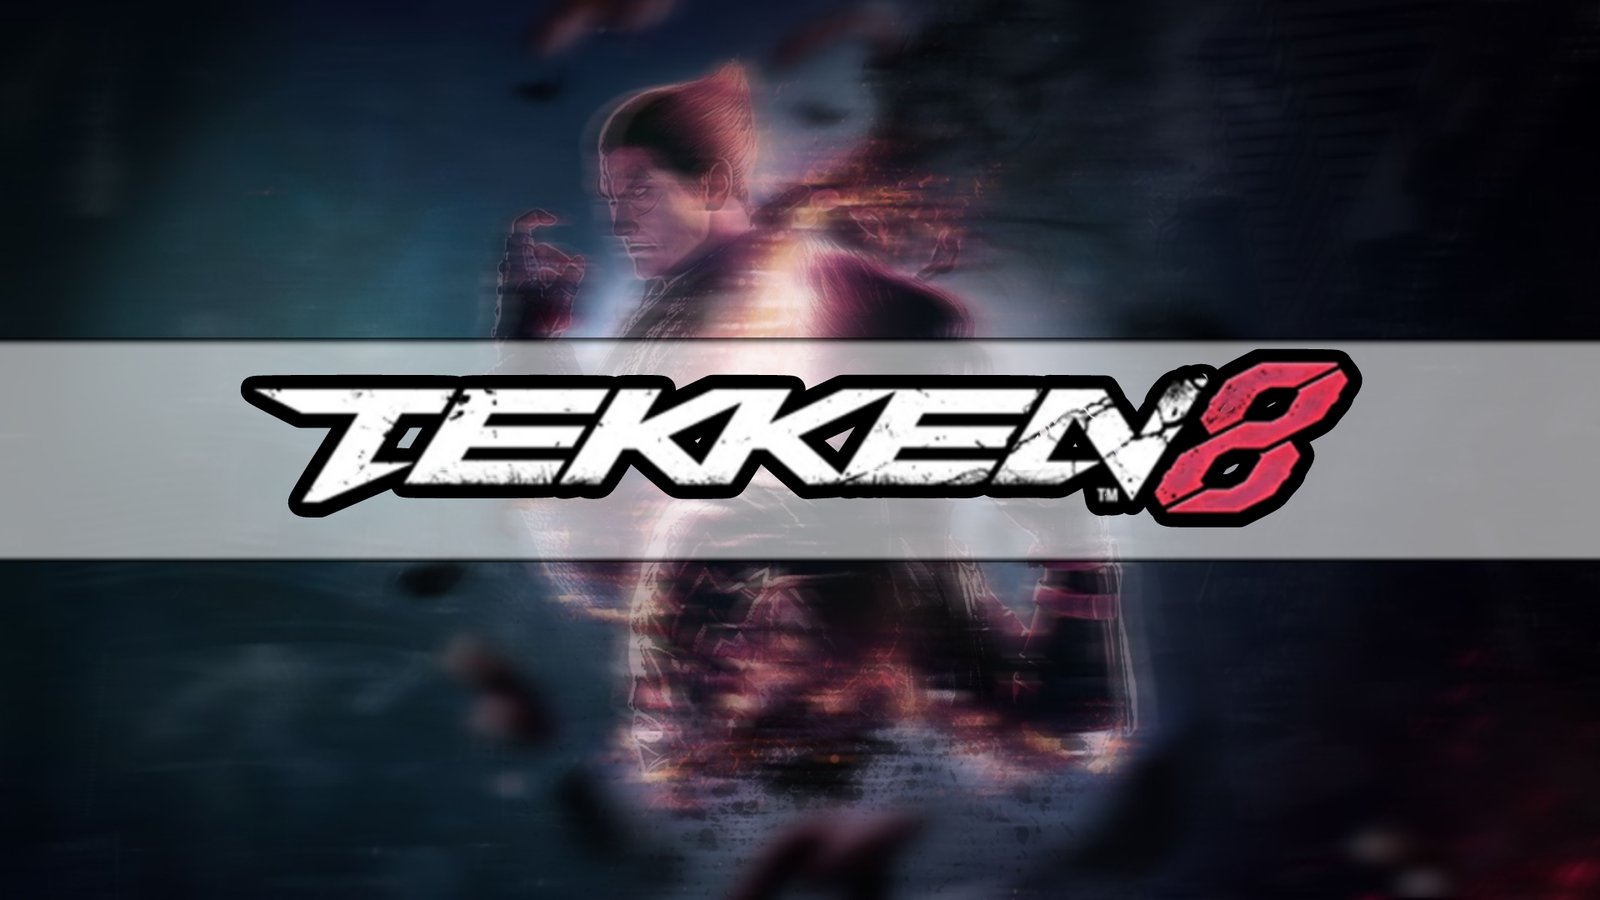 أسرار وخفايا تكنولوجية في لعبة Tekken 8 - كيف تؤثر التقنيات على تجربة اللاعب